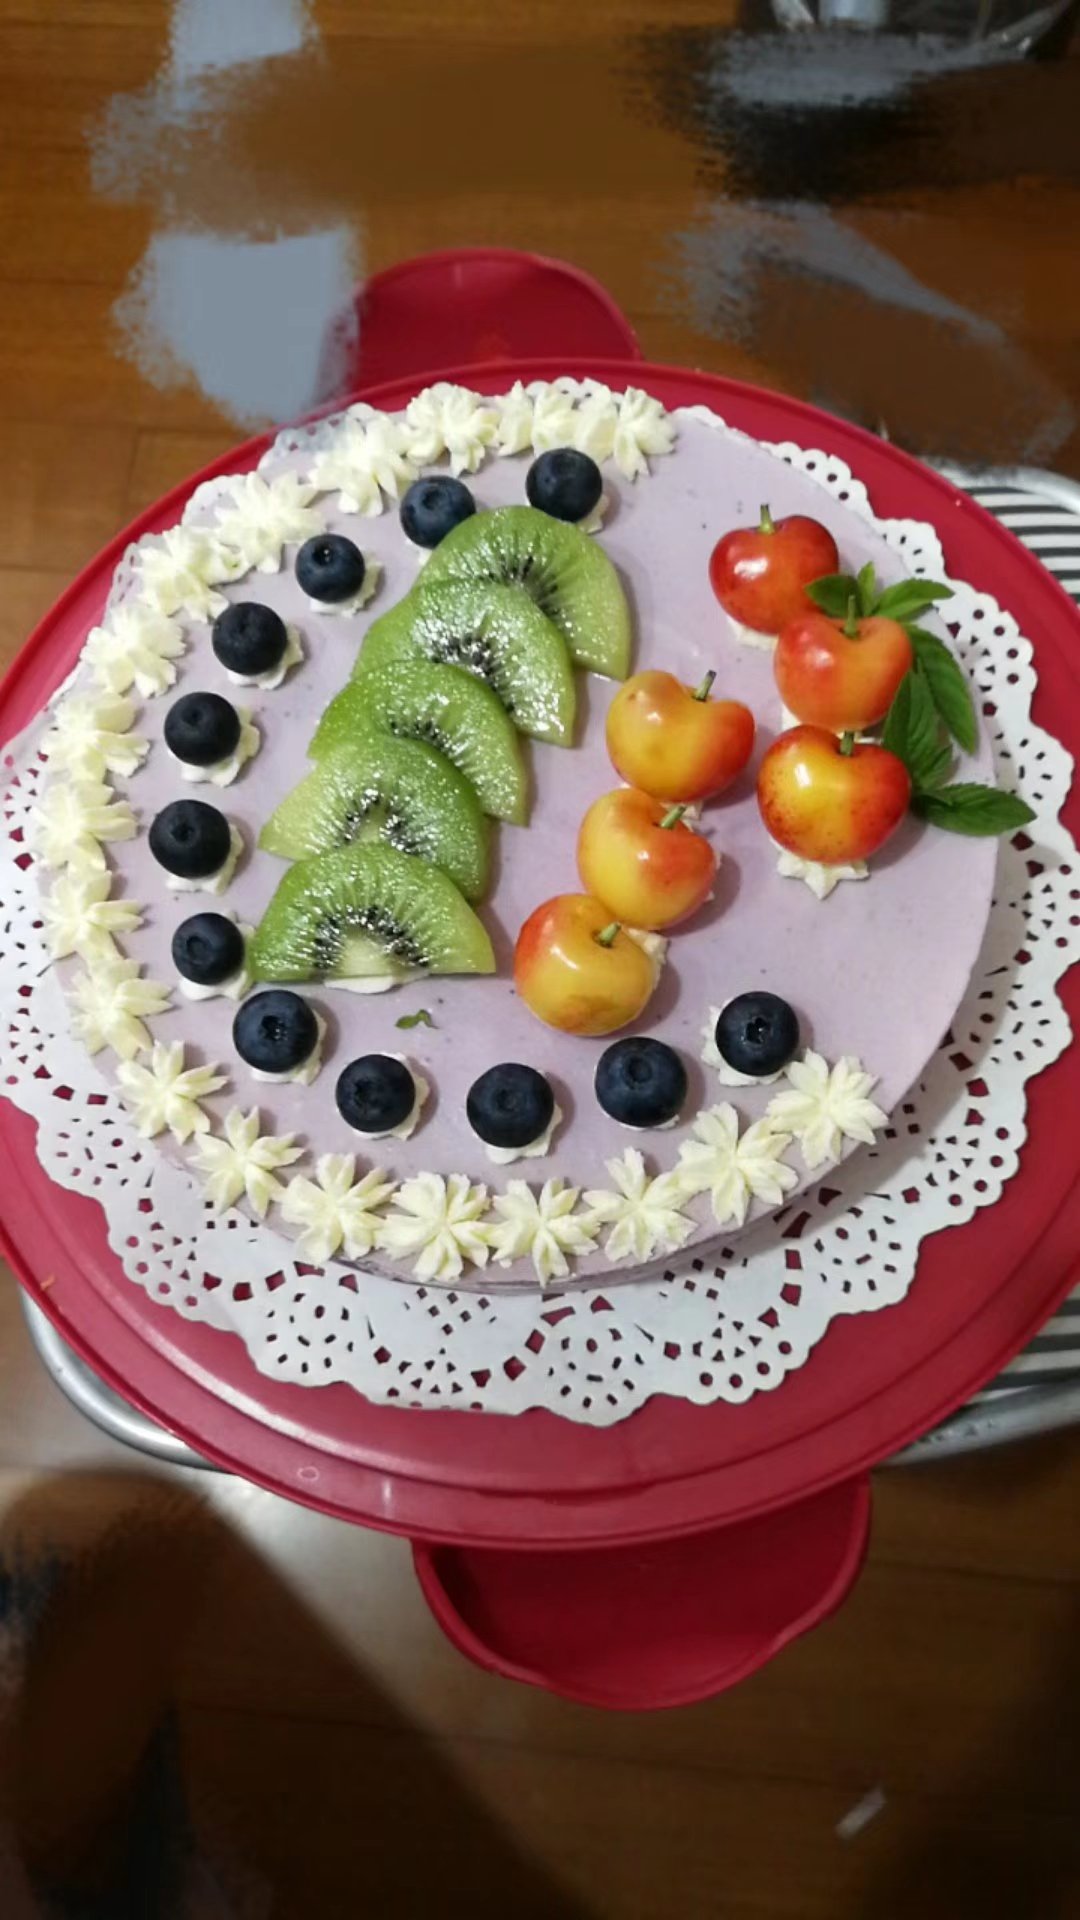 8寸蓝莓慕斯蛋糕